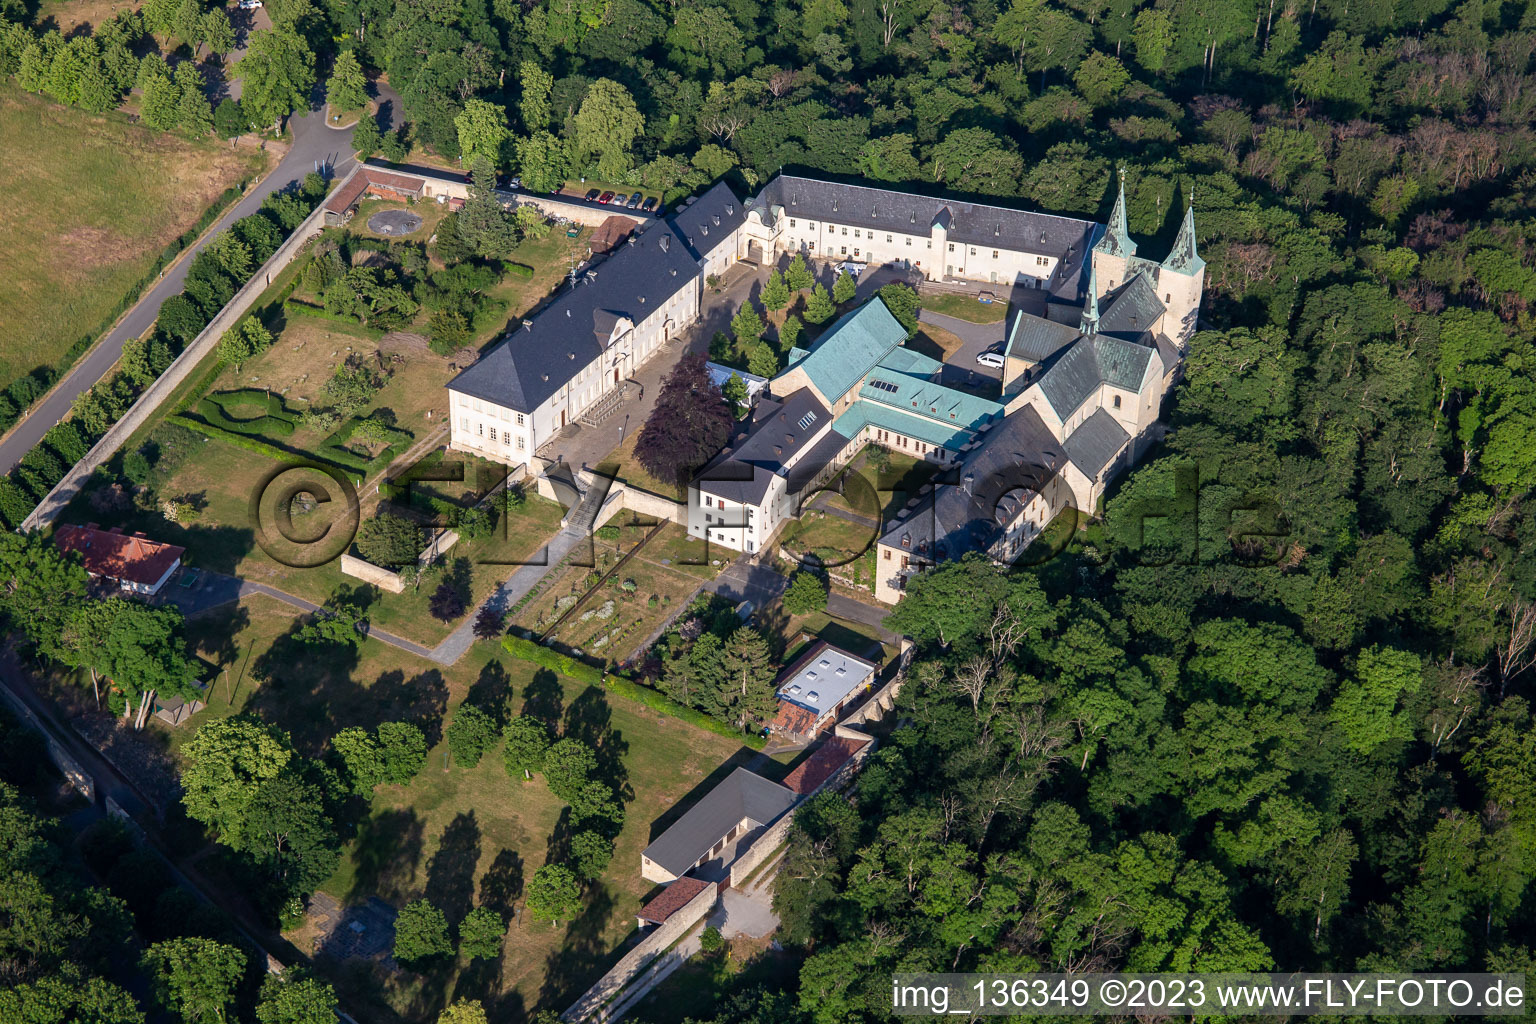 Monastère de Huysbourg à le quartier Röderhof in Huy dans le département Saxe-Anhalt, Allemagne vue d'en haut